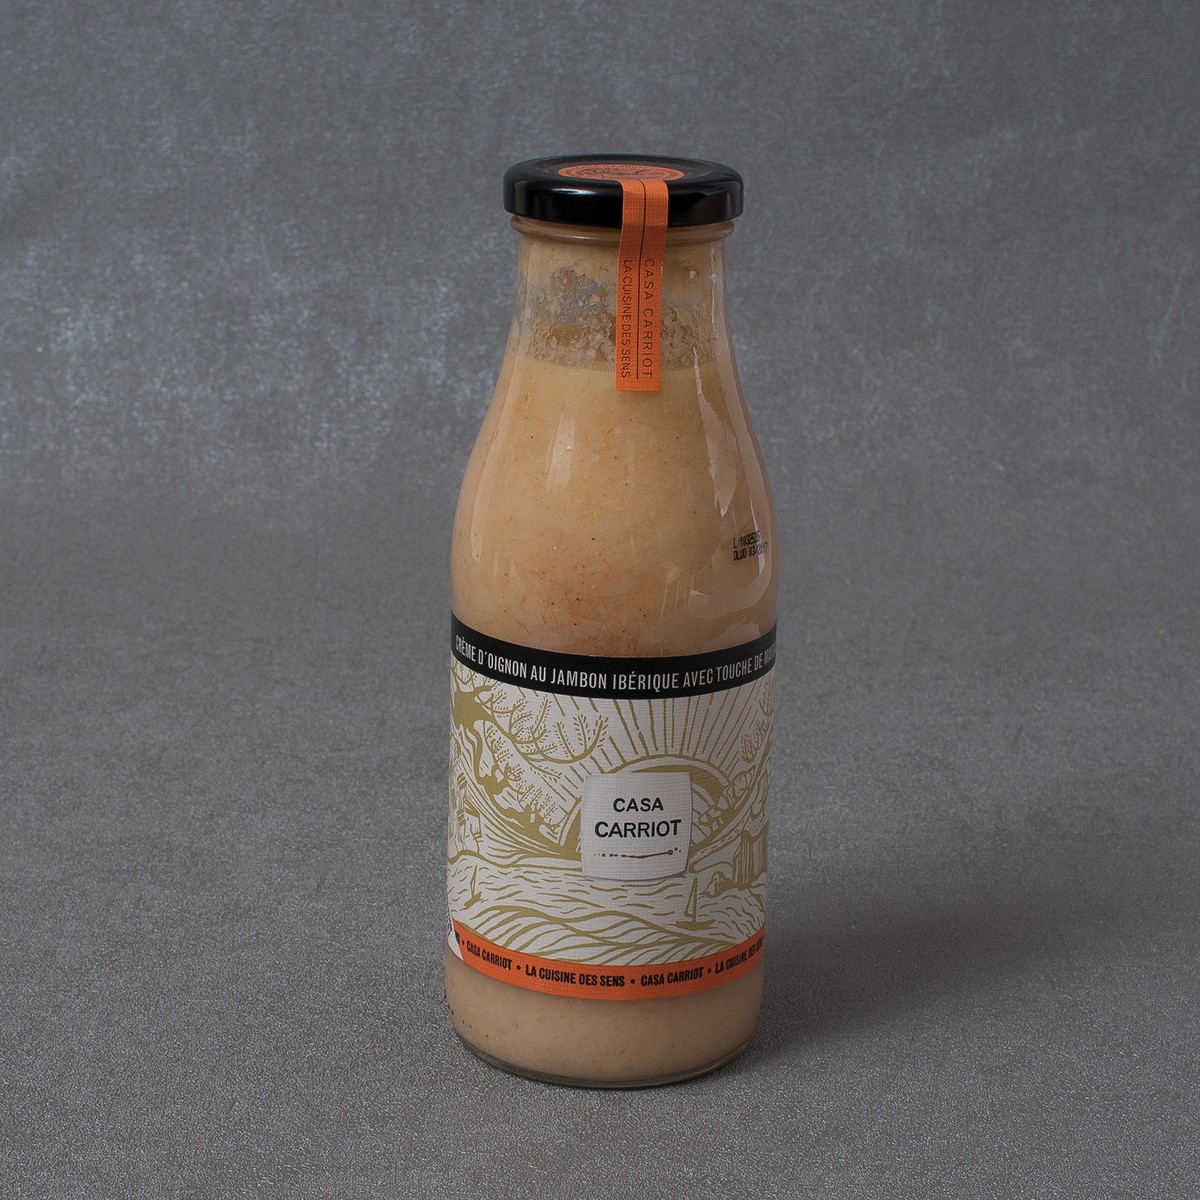 Casa Carriot  Crème d´Oignon au Jambon Ibérique avec touche de Massalé, 485 ml  485ml